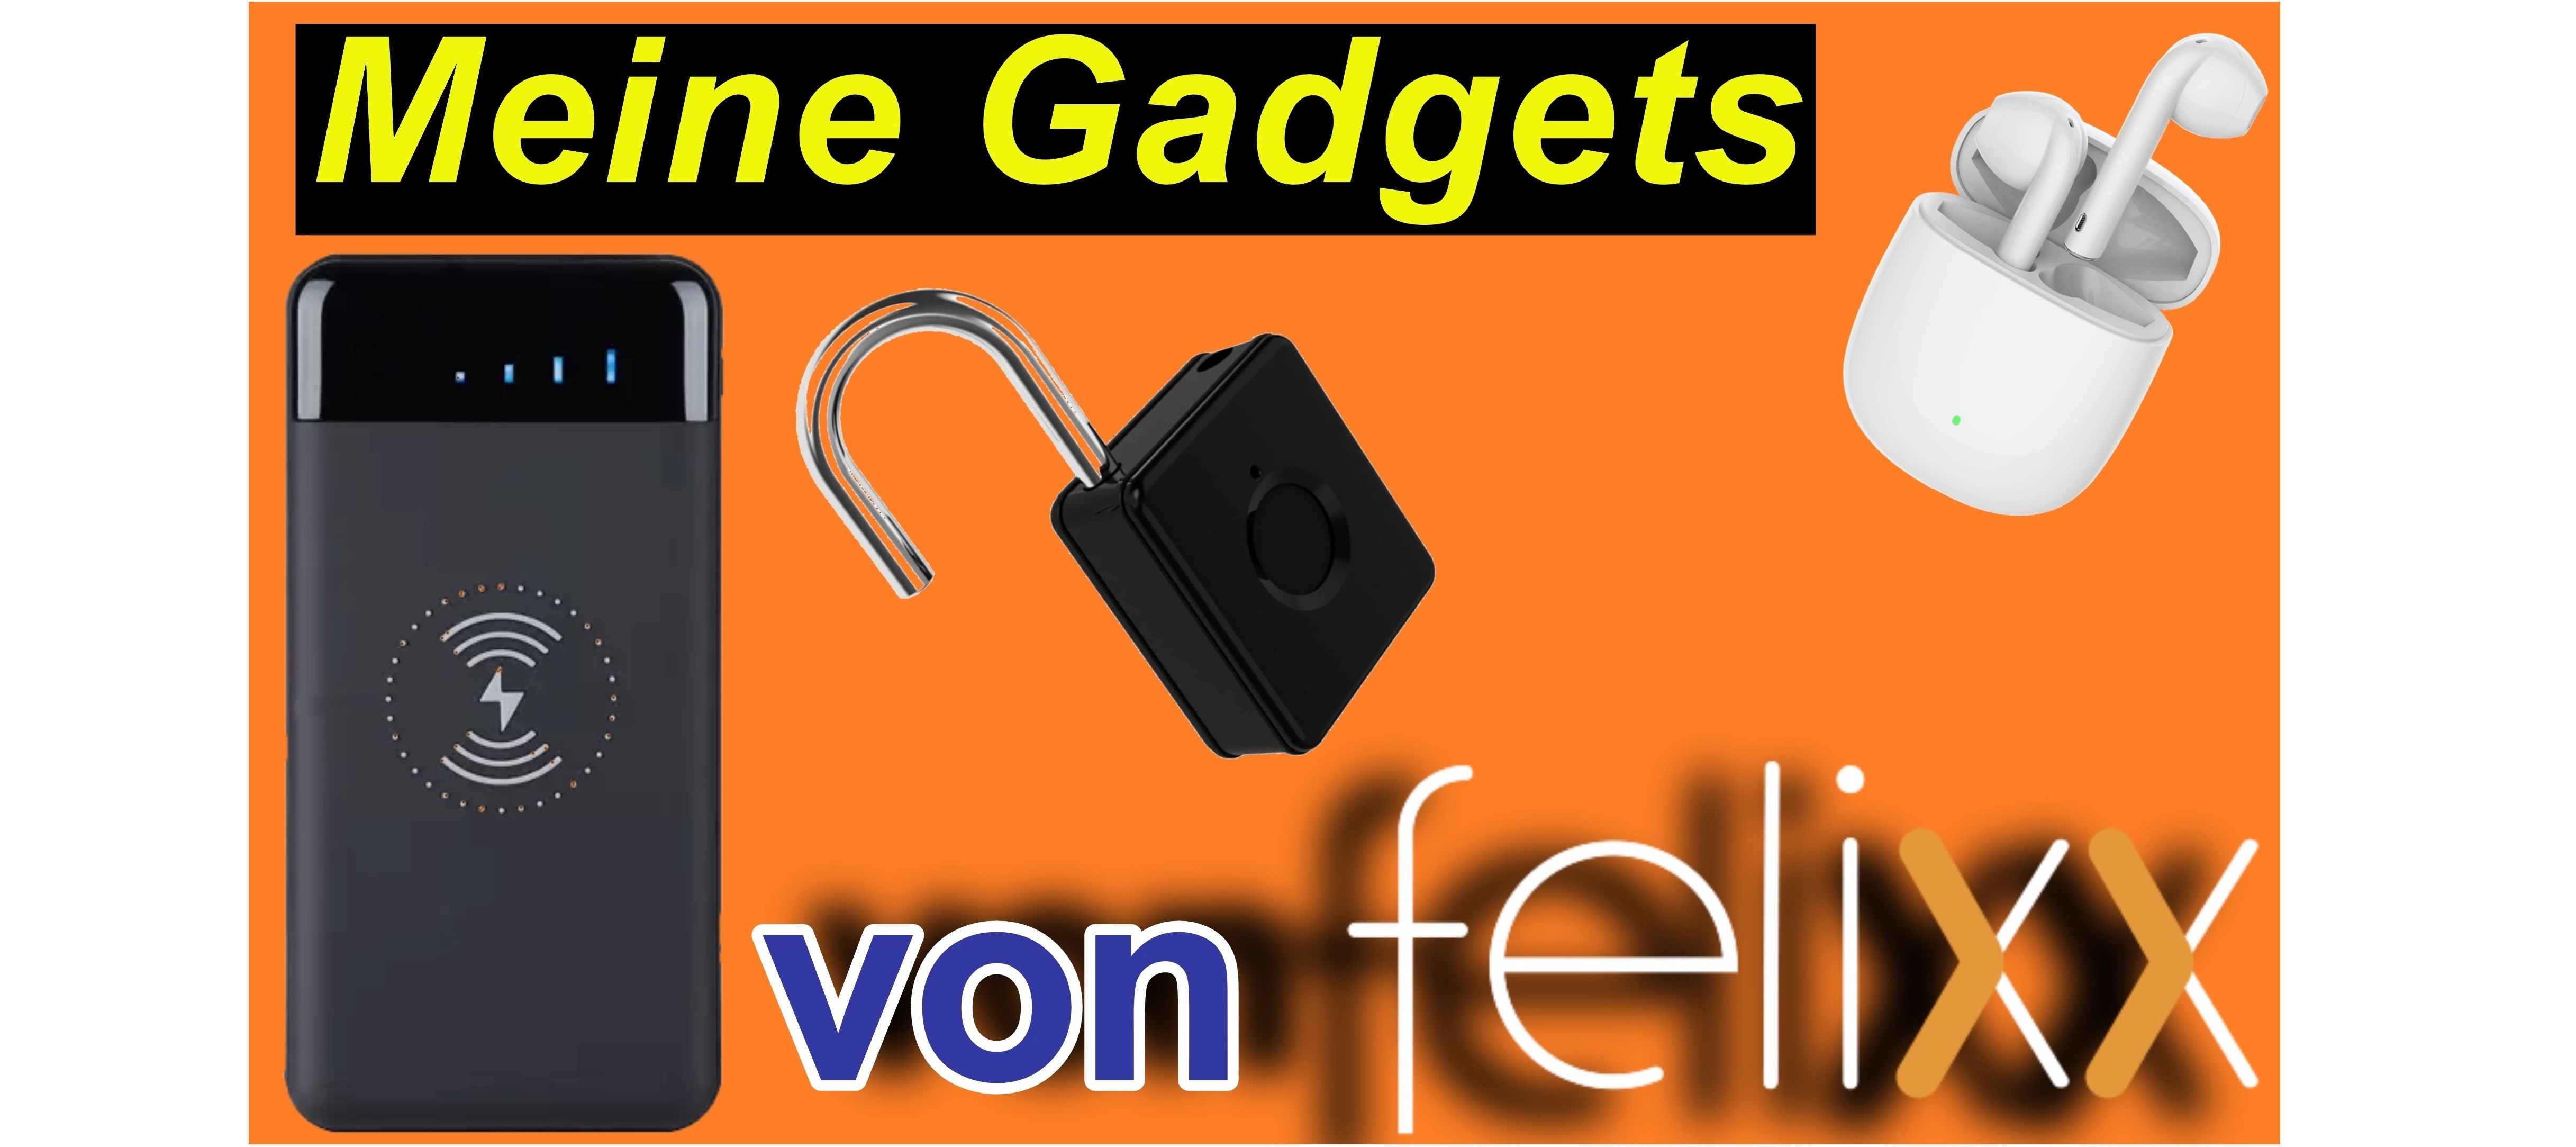 Vier hochwertige Gadgets von Felixx